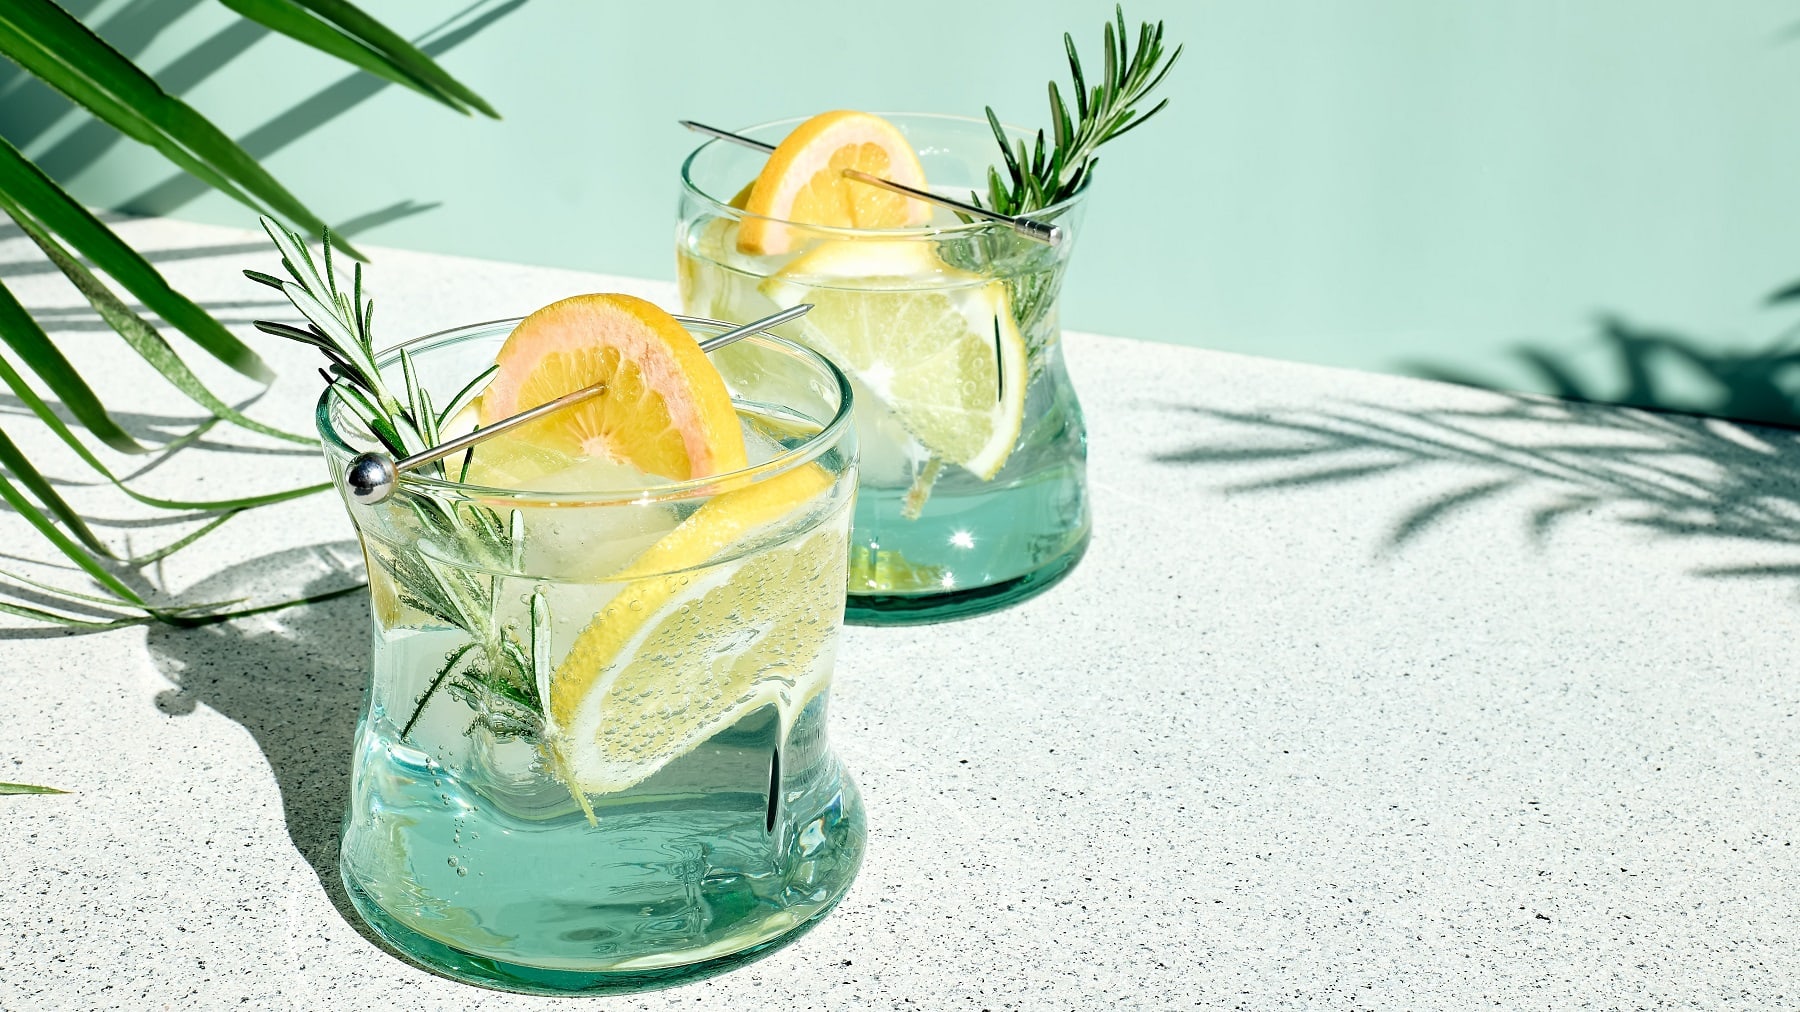 Zwei Gläser mit dem Vodka Tonic auf einem hellen Steintisch mit grünem Hintergrund und Palmen links und rechts.